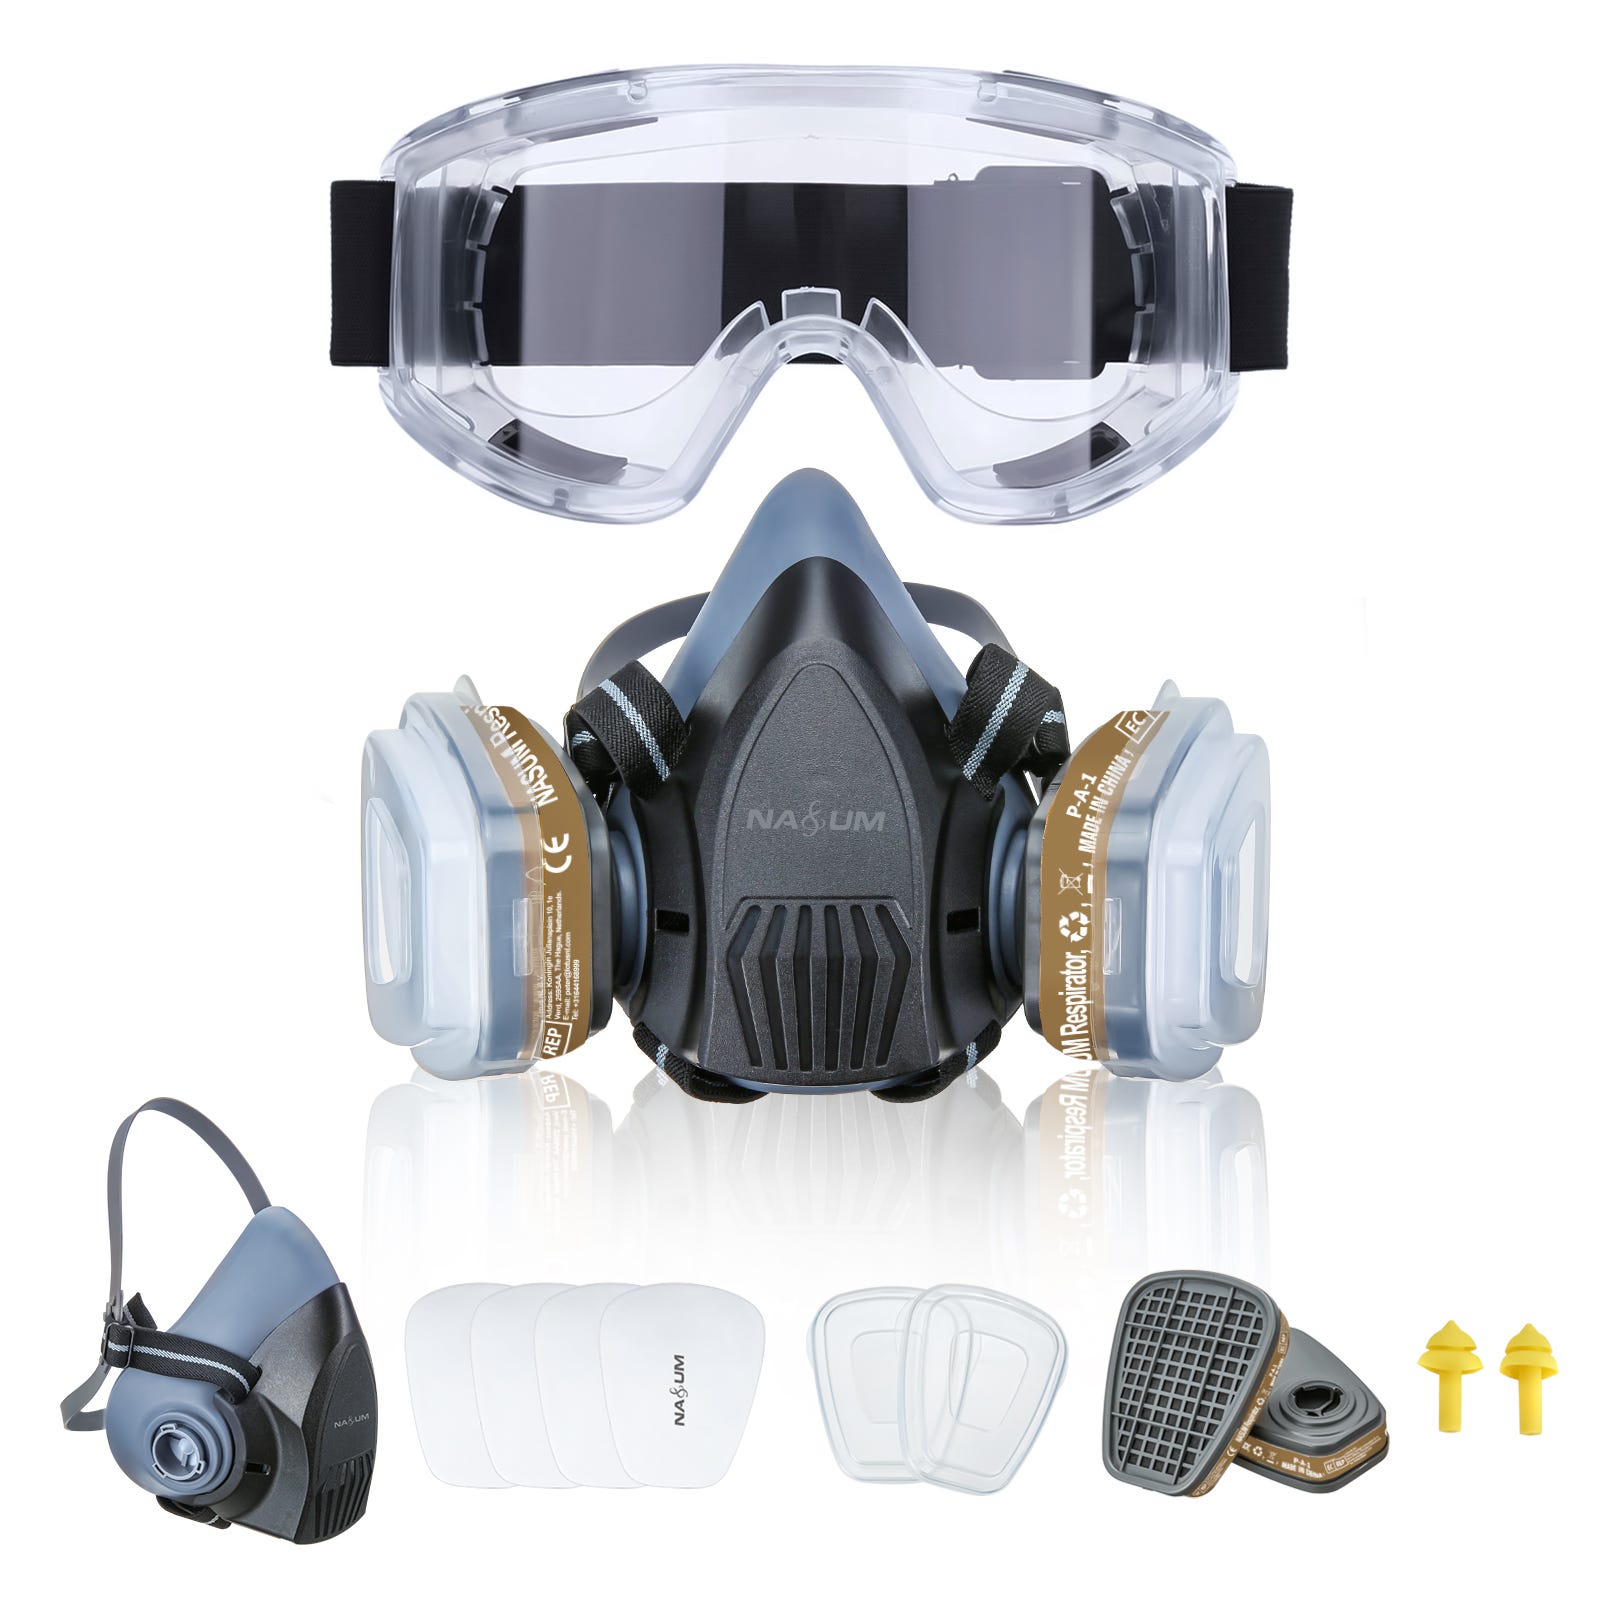 Masque à gaz respirateur facial complet, filtre militaire de